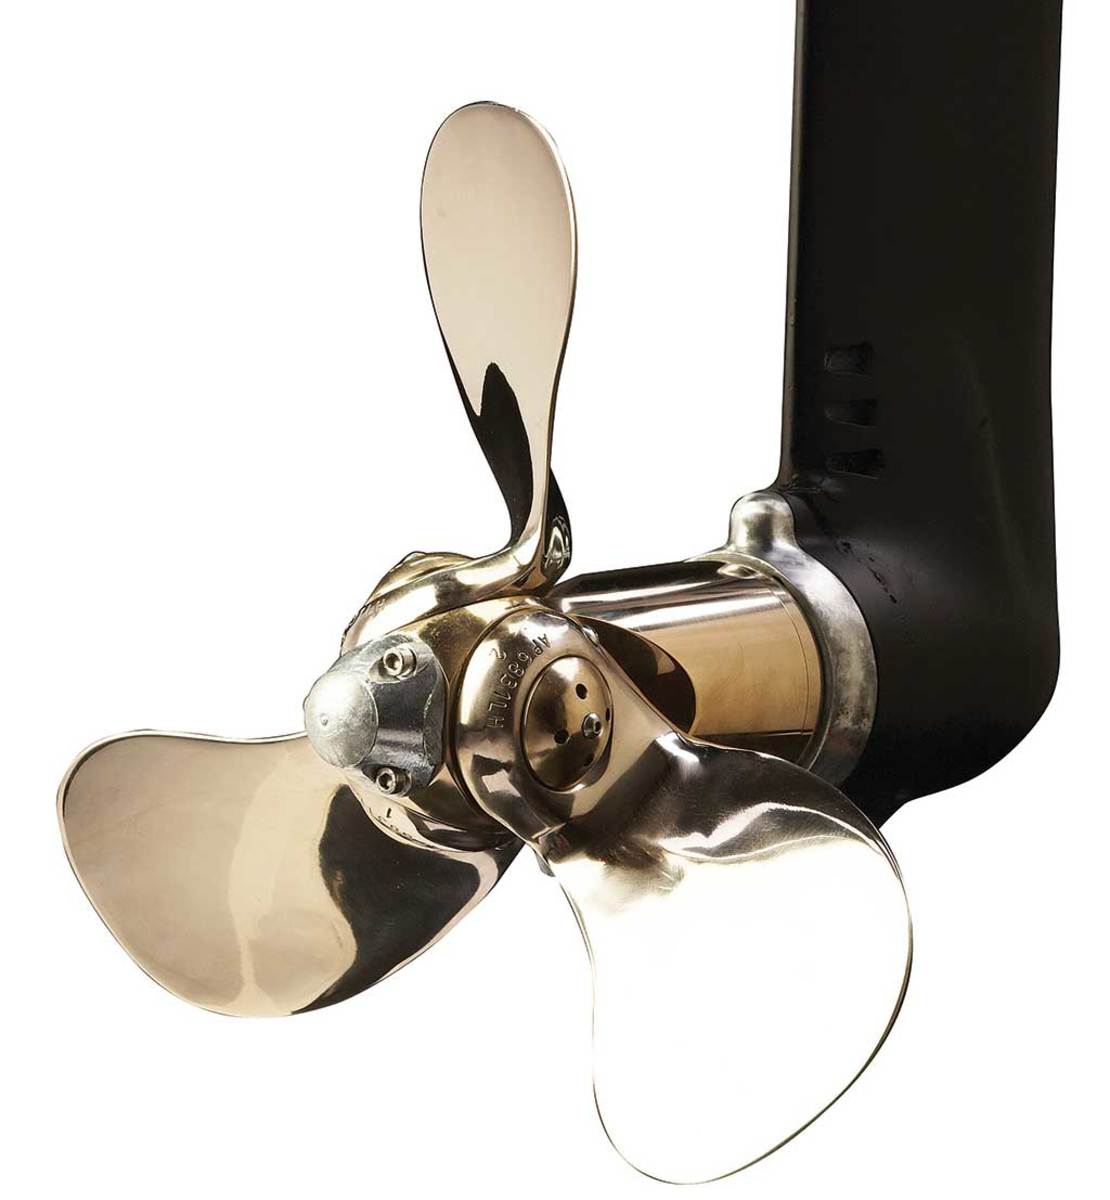 94-Bruntons-Autoprop-feathering--saildrive-propeller